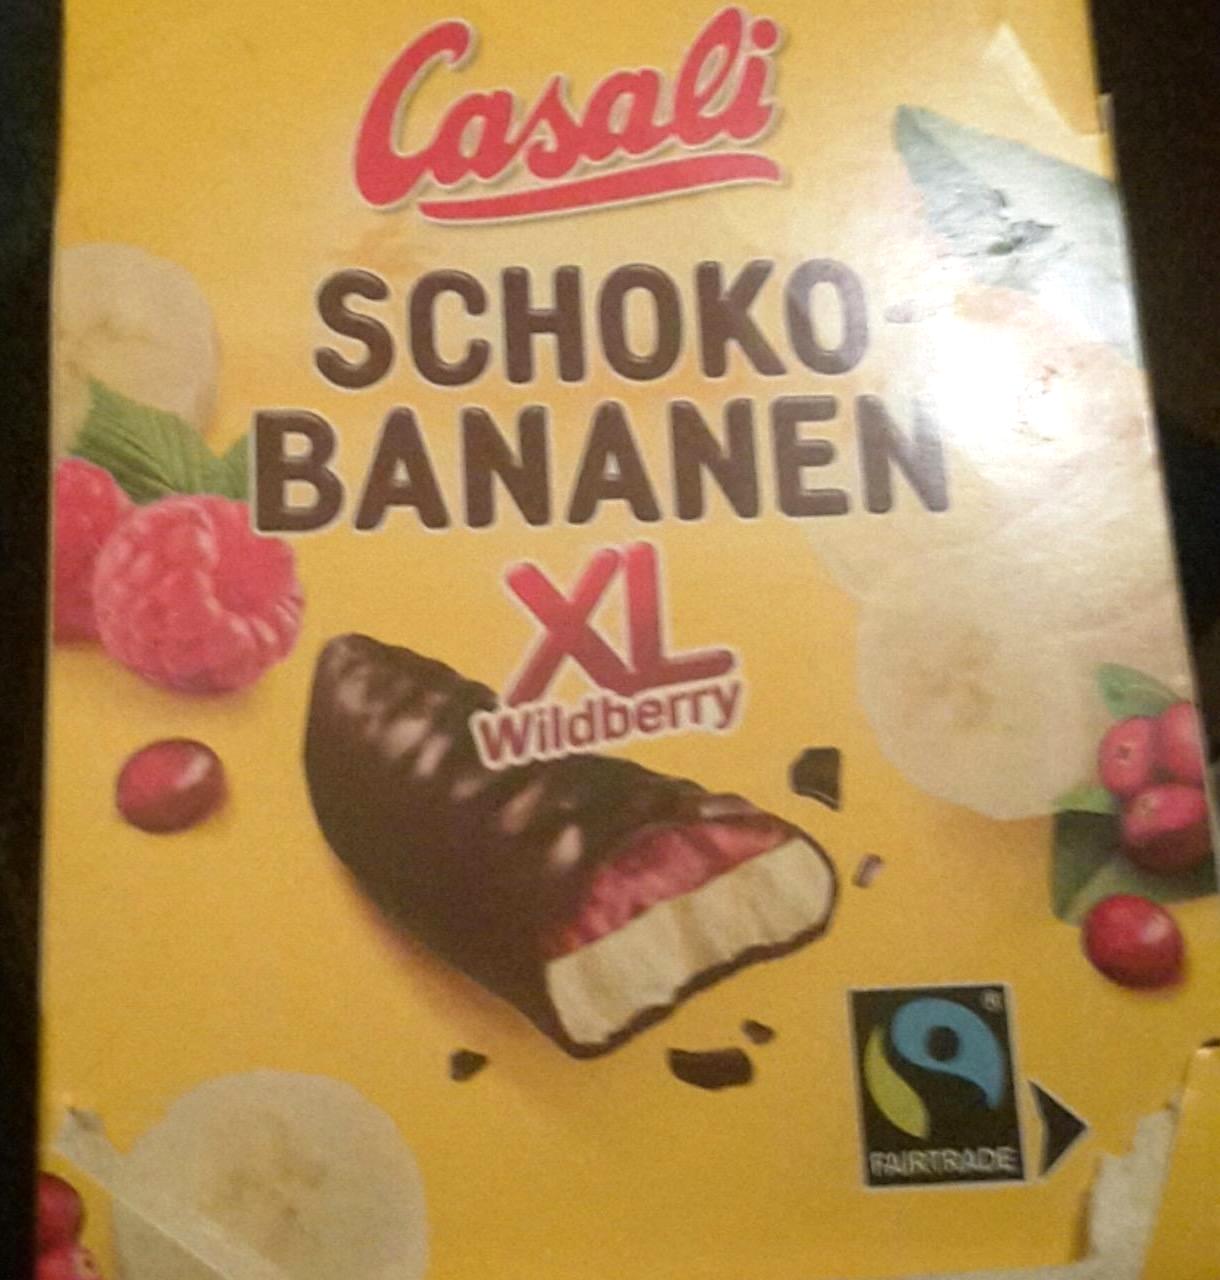 Képek - Casali XL csokoládéba mártott habosított banánkrém gyümölcs zselével 140 g